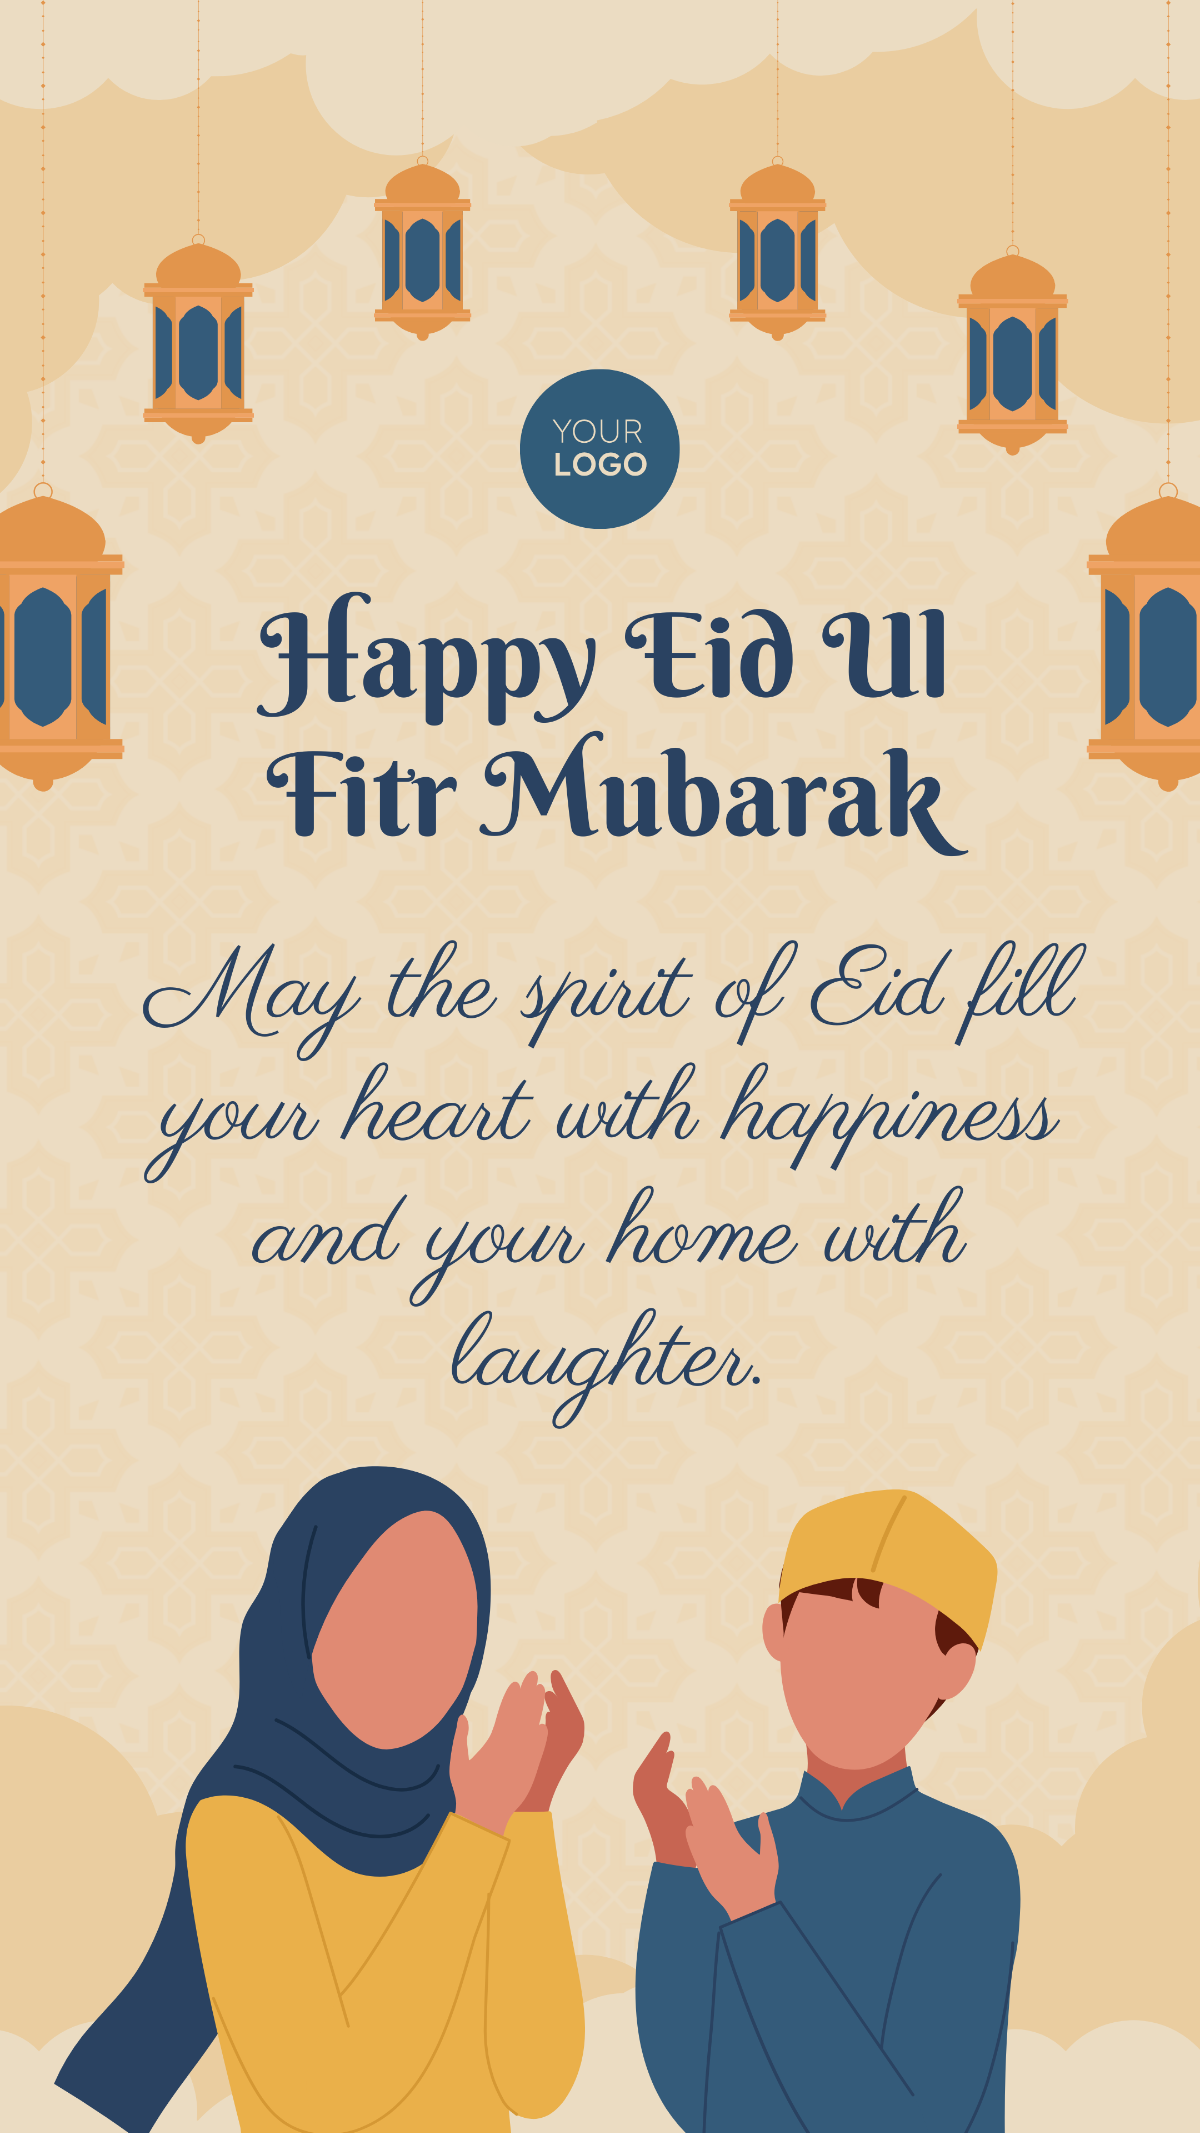 Happy Eid Ul Fitr Mubarak Story Template